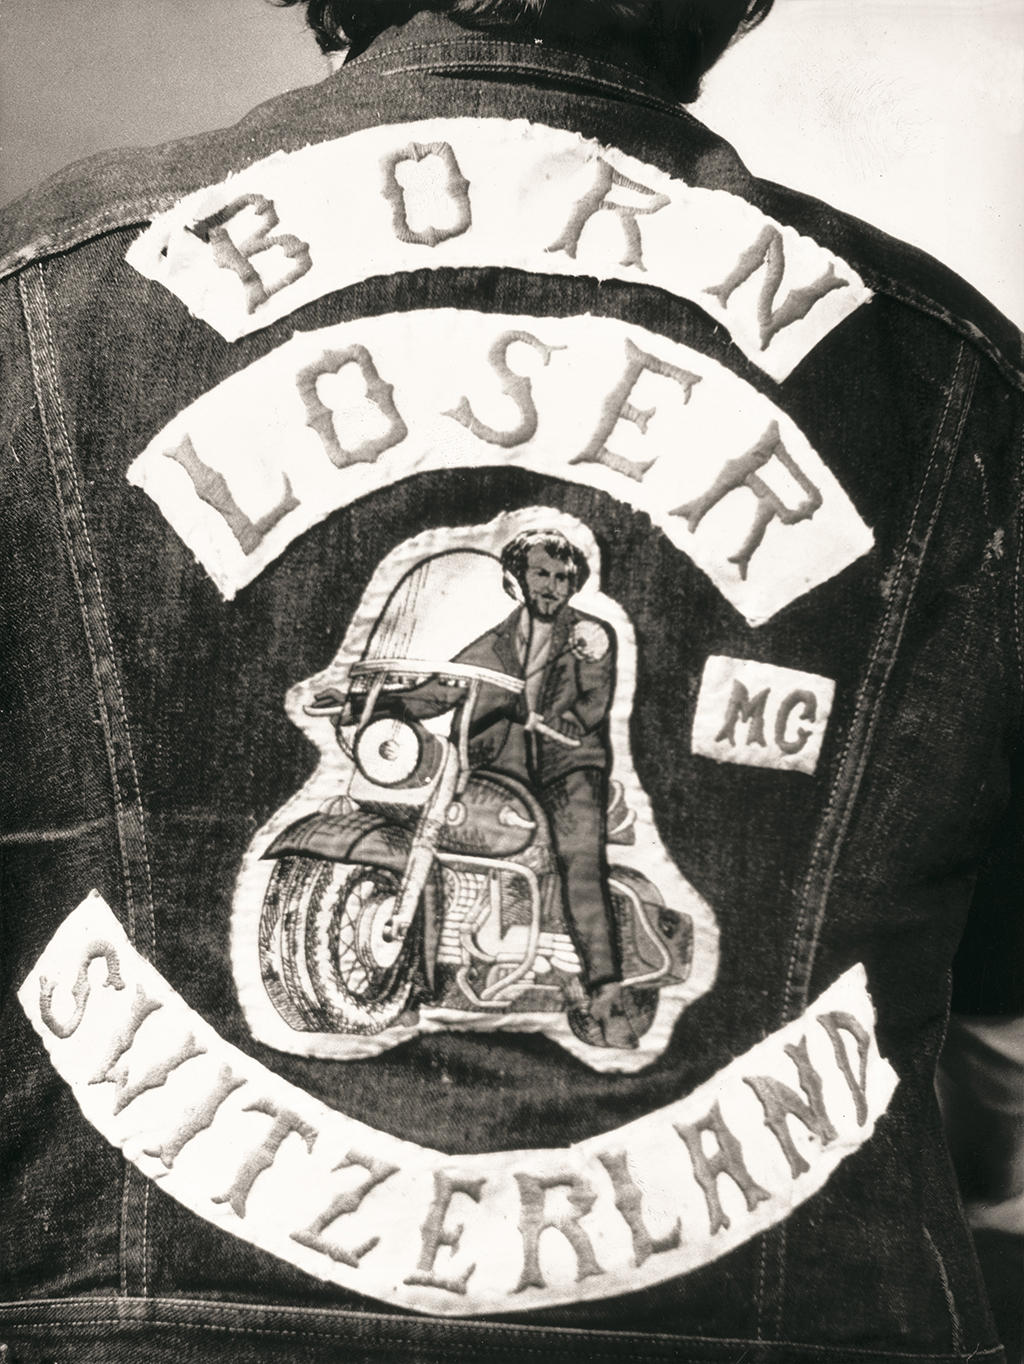 Нашивка на спине джинсовой куртки, которая гласит «Born Loser Mc Switzerland».